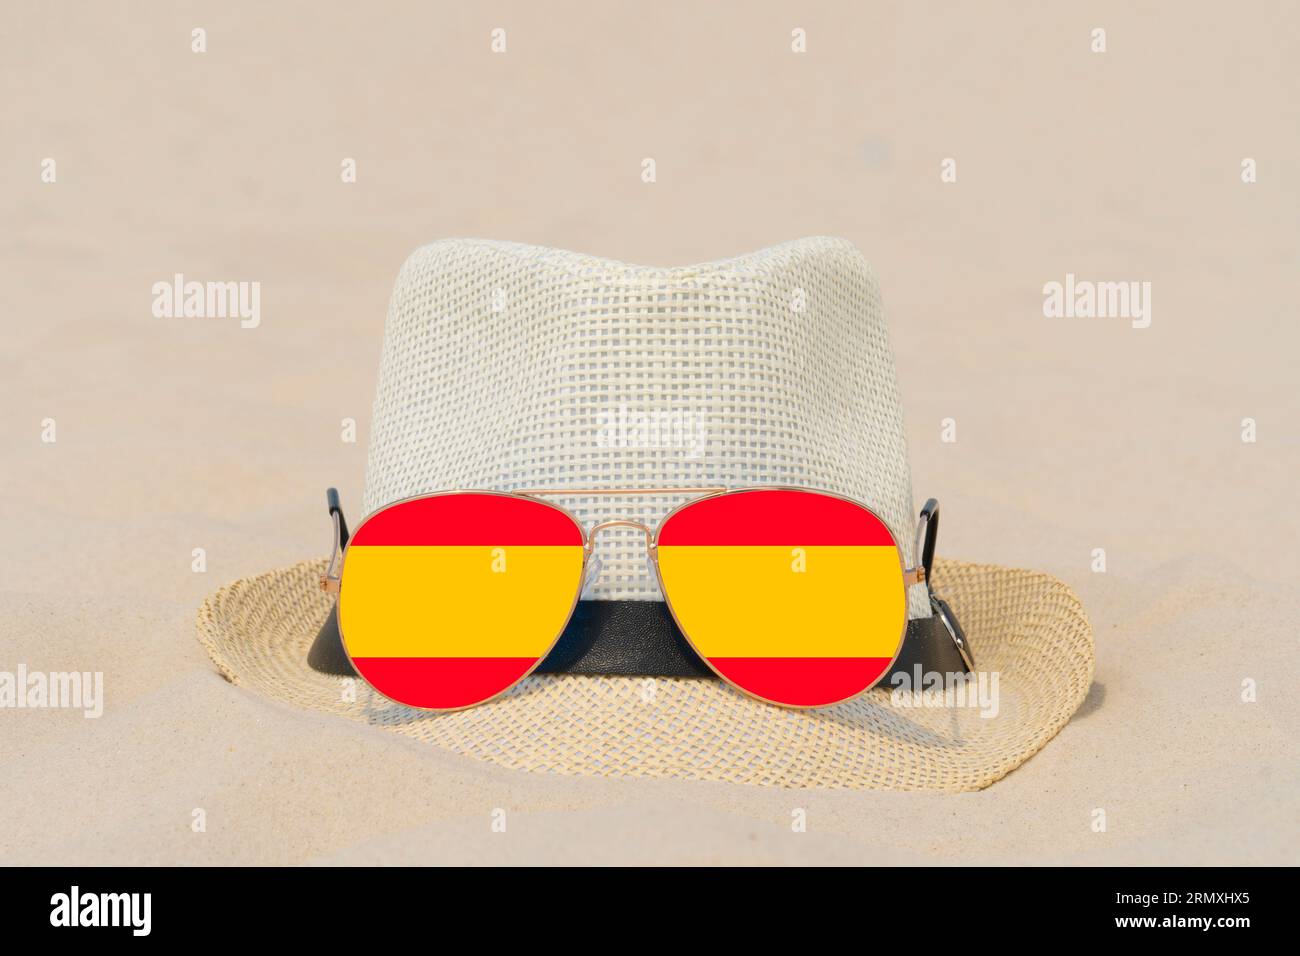 Sonnenbrille mit Brille in Form einer spanischen Flagge und einem Hut liegen auf Sand. Konzept der Sommerferien und Reisen in Spanien. Sommerruhe. Weihnachtszeit Stockfoto